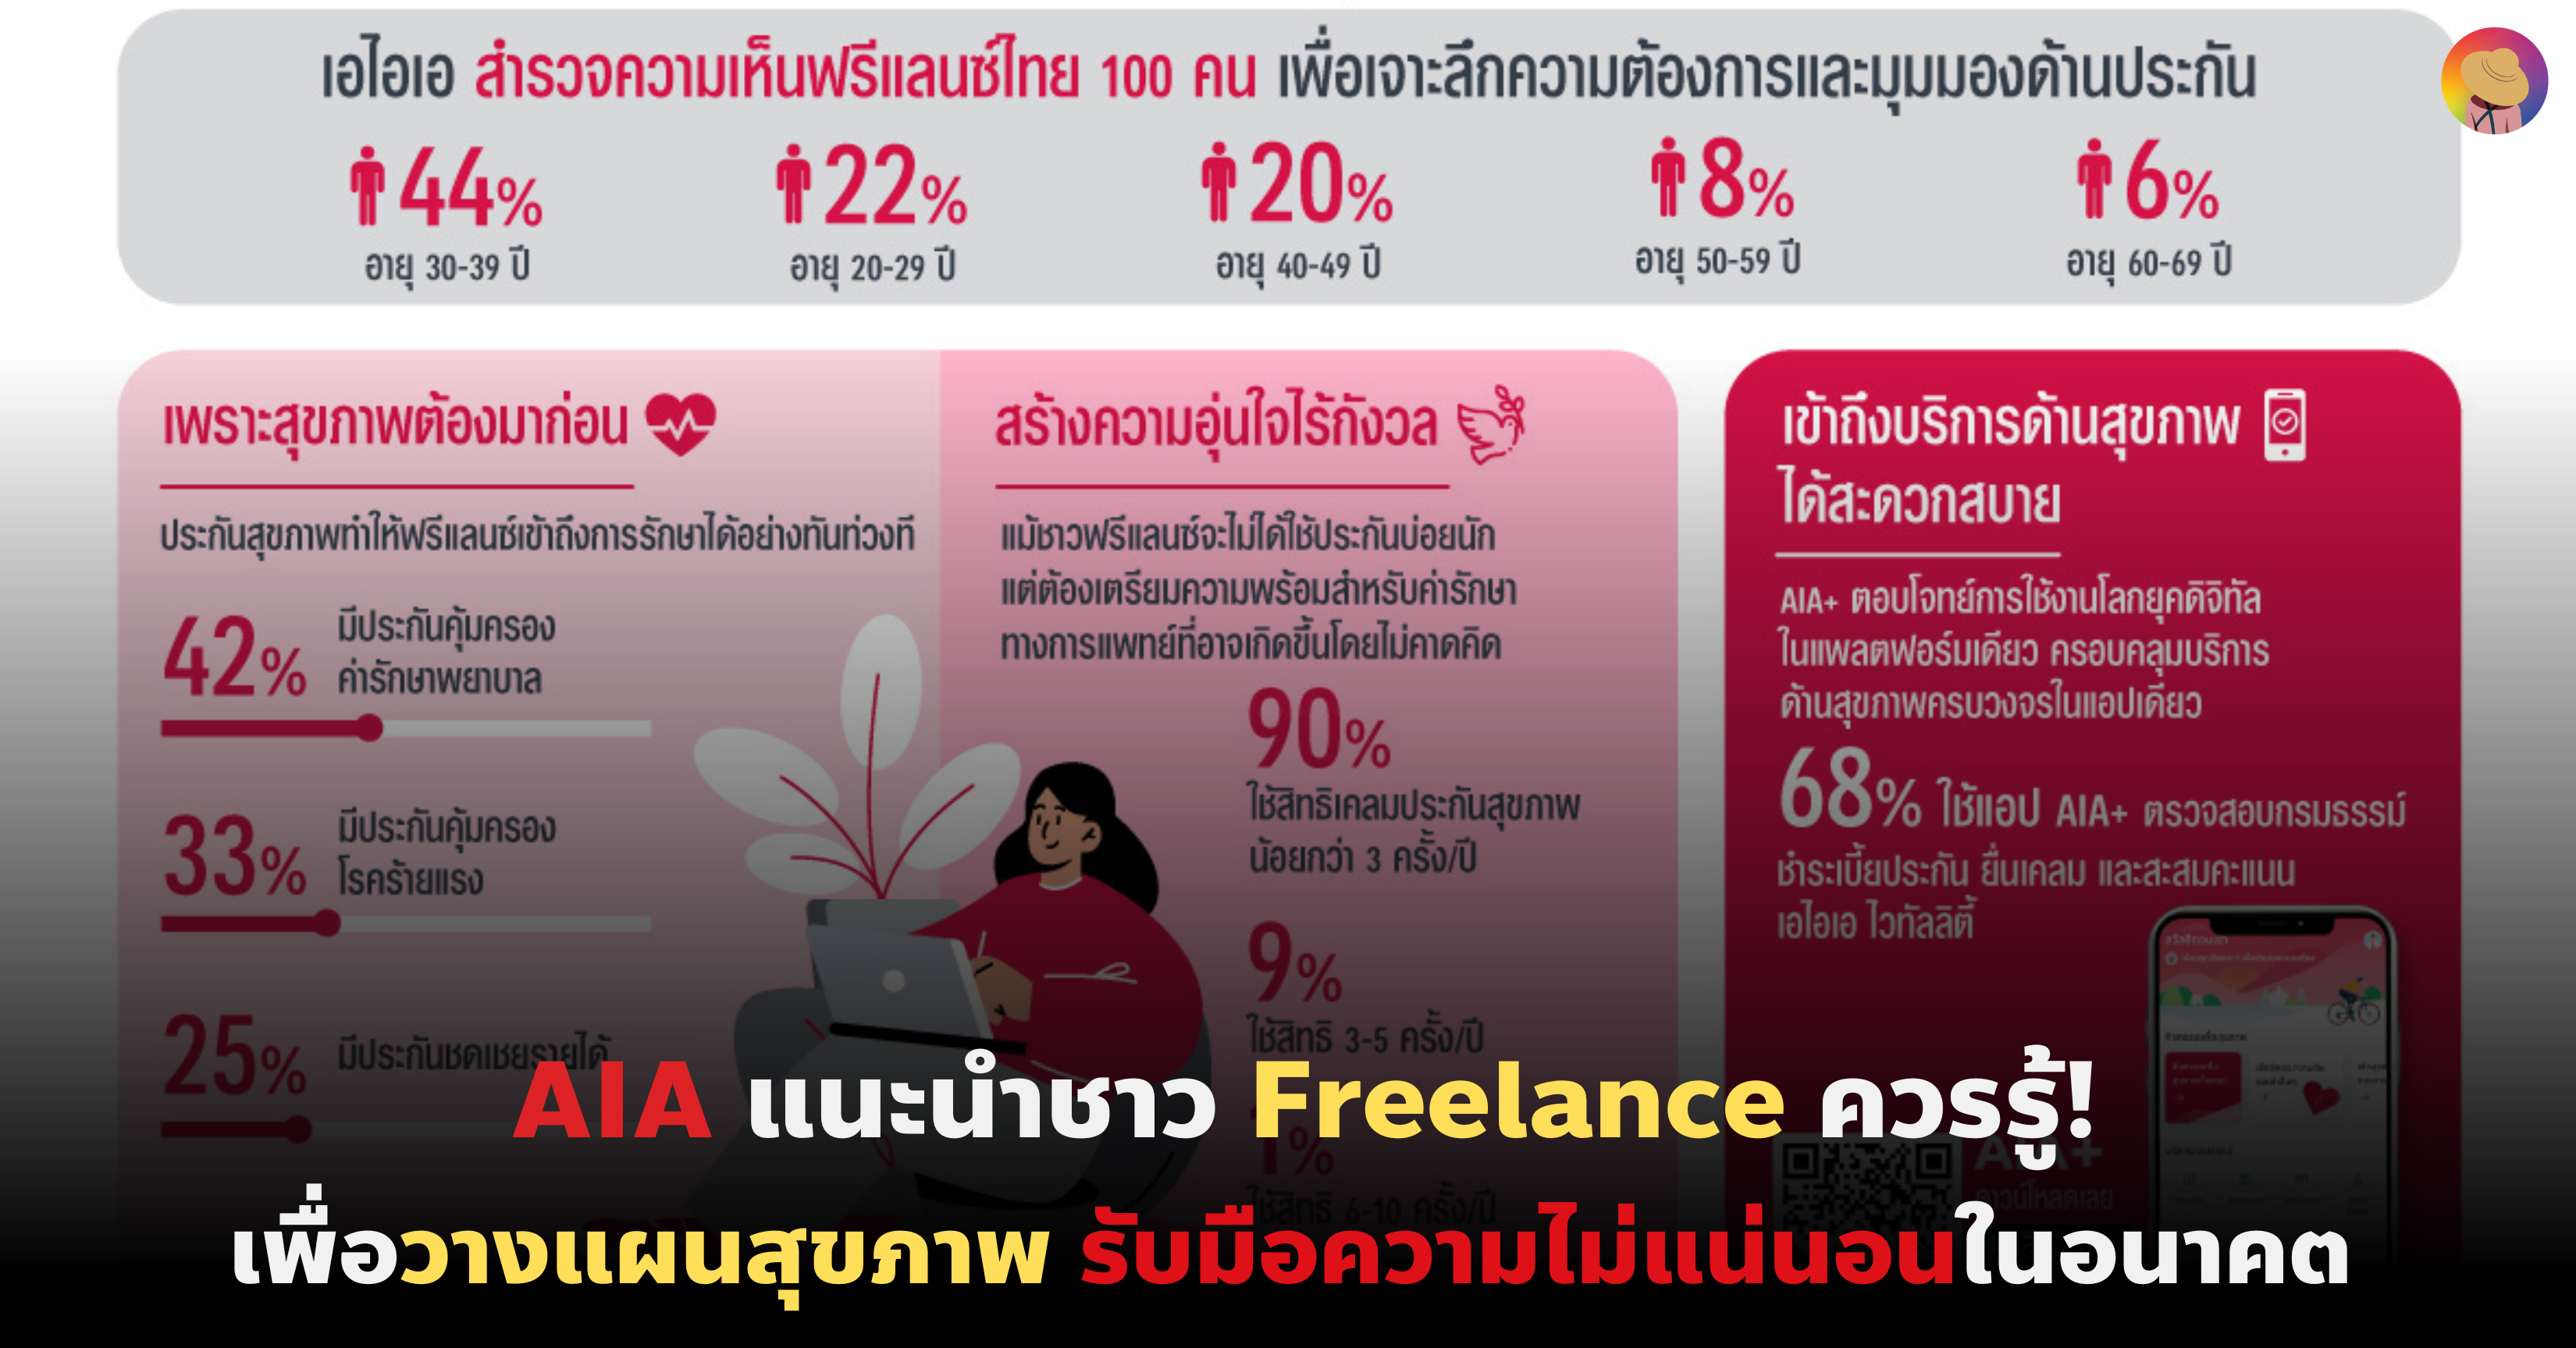 AIA แนะนำชาว Freelance ควรรู้เพื่อ วางแผนสุขภาพ และรับมือความไม่แน่นอนในอนาคต